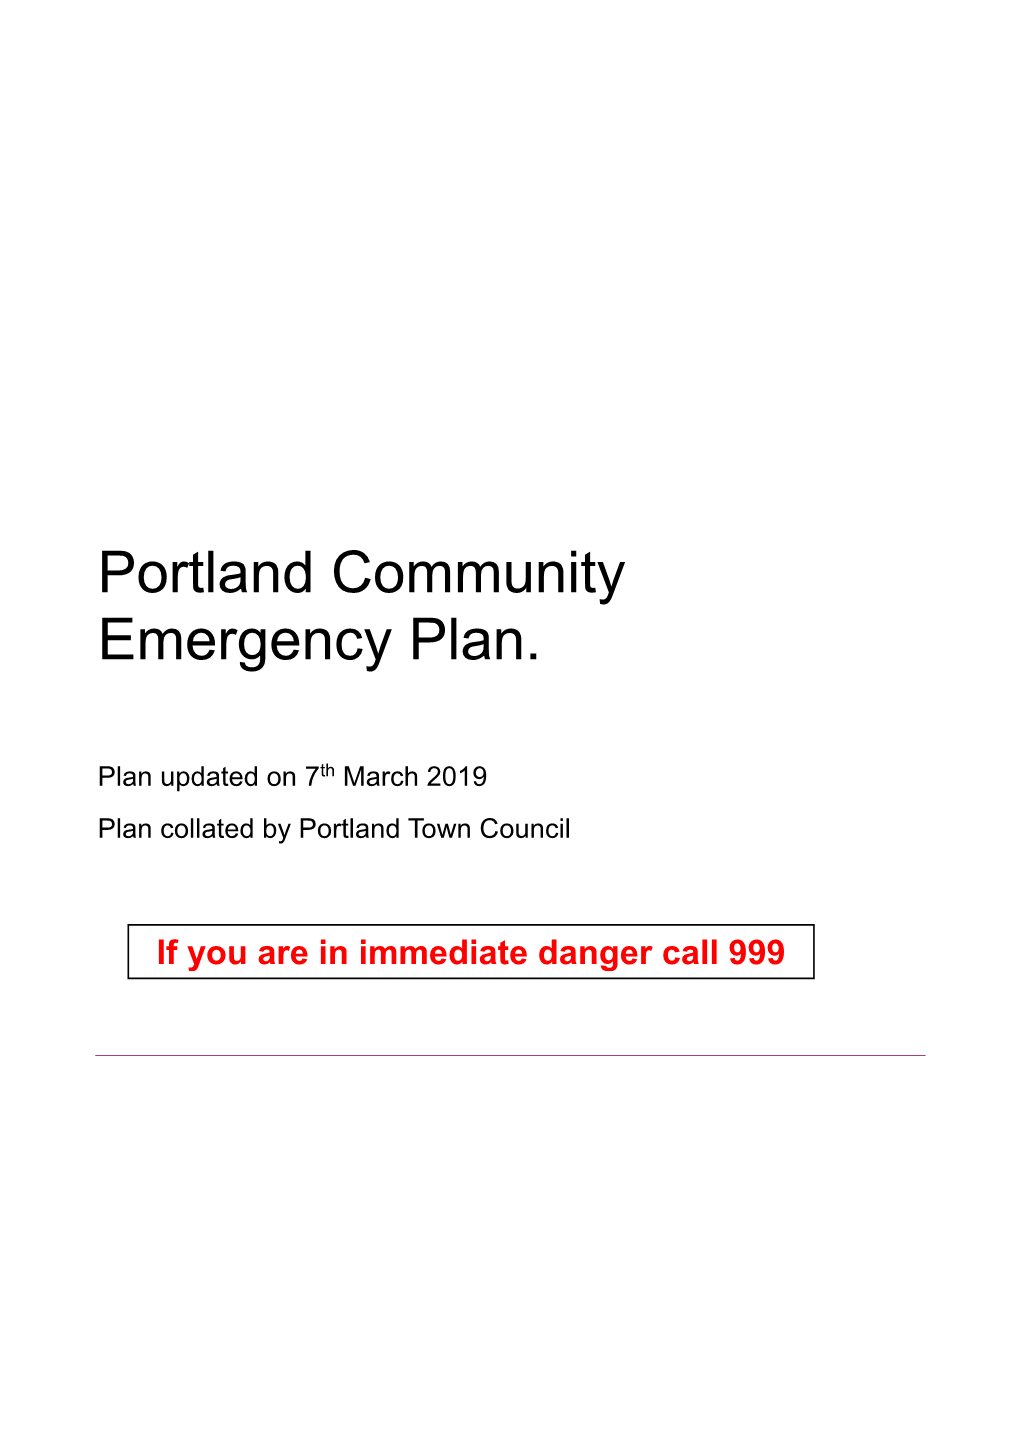 Portland Community Emergency Plan